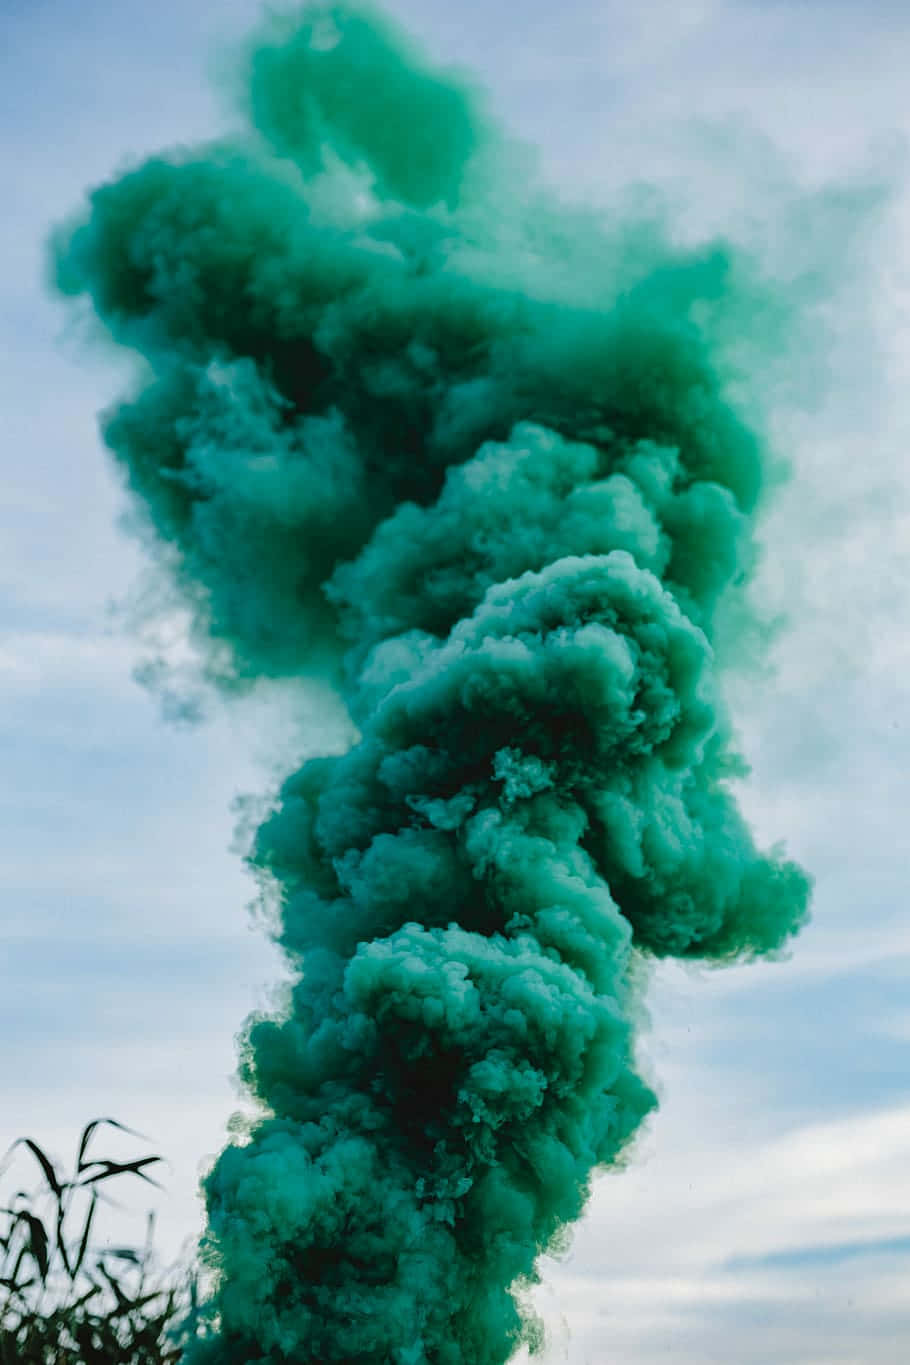 Unanuvola Verde Di Fumo Sta Soffiando Nel Cielo.